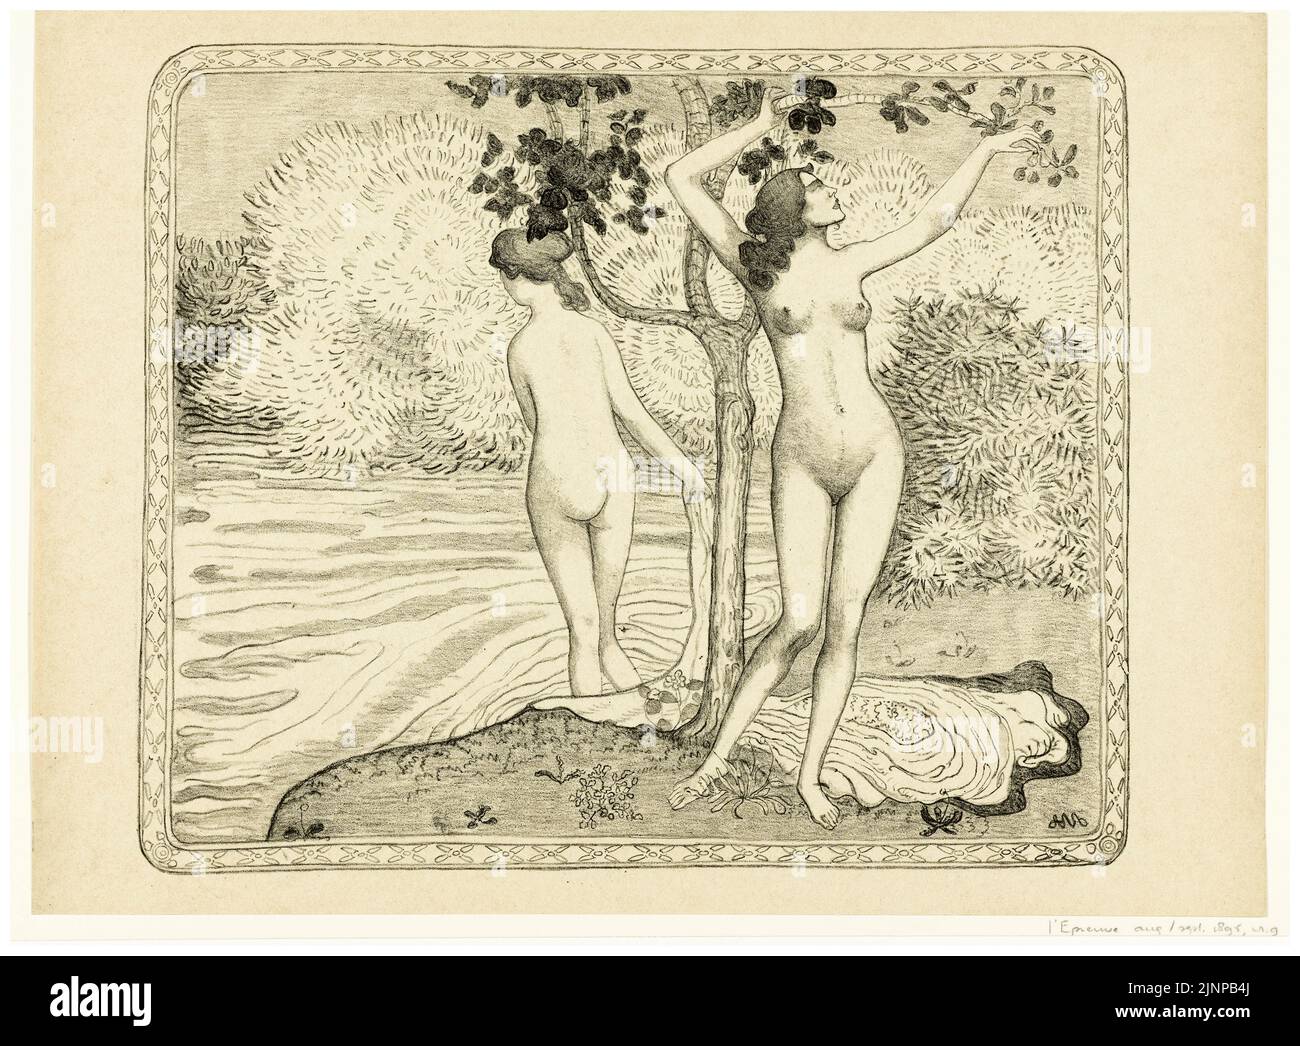 Estampado de Aristide Maillol, dos bañistas en la orilla del mar, Verano, dibujo, 1895 Foto de stock